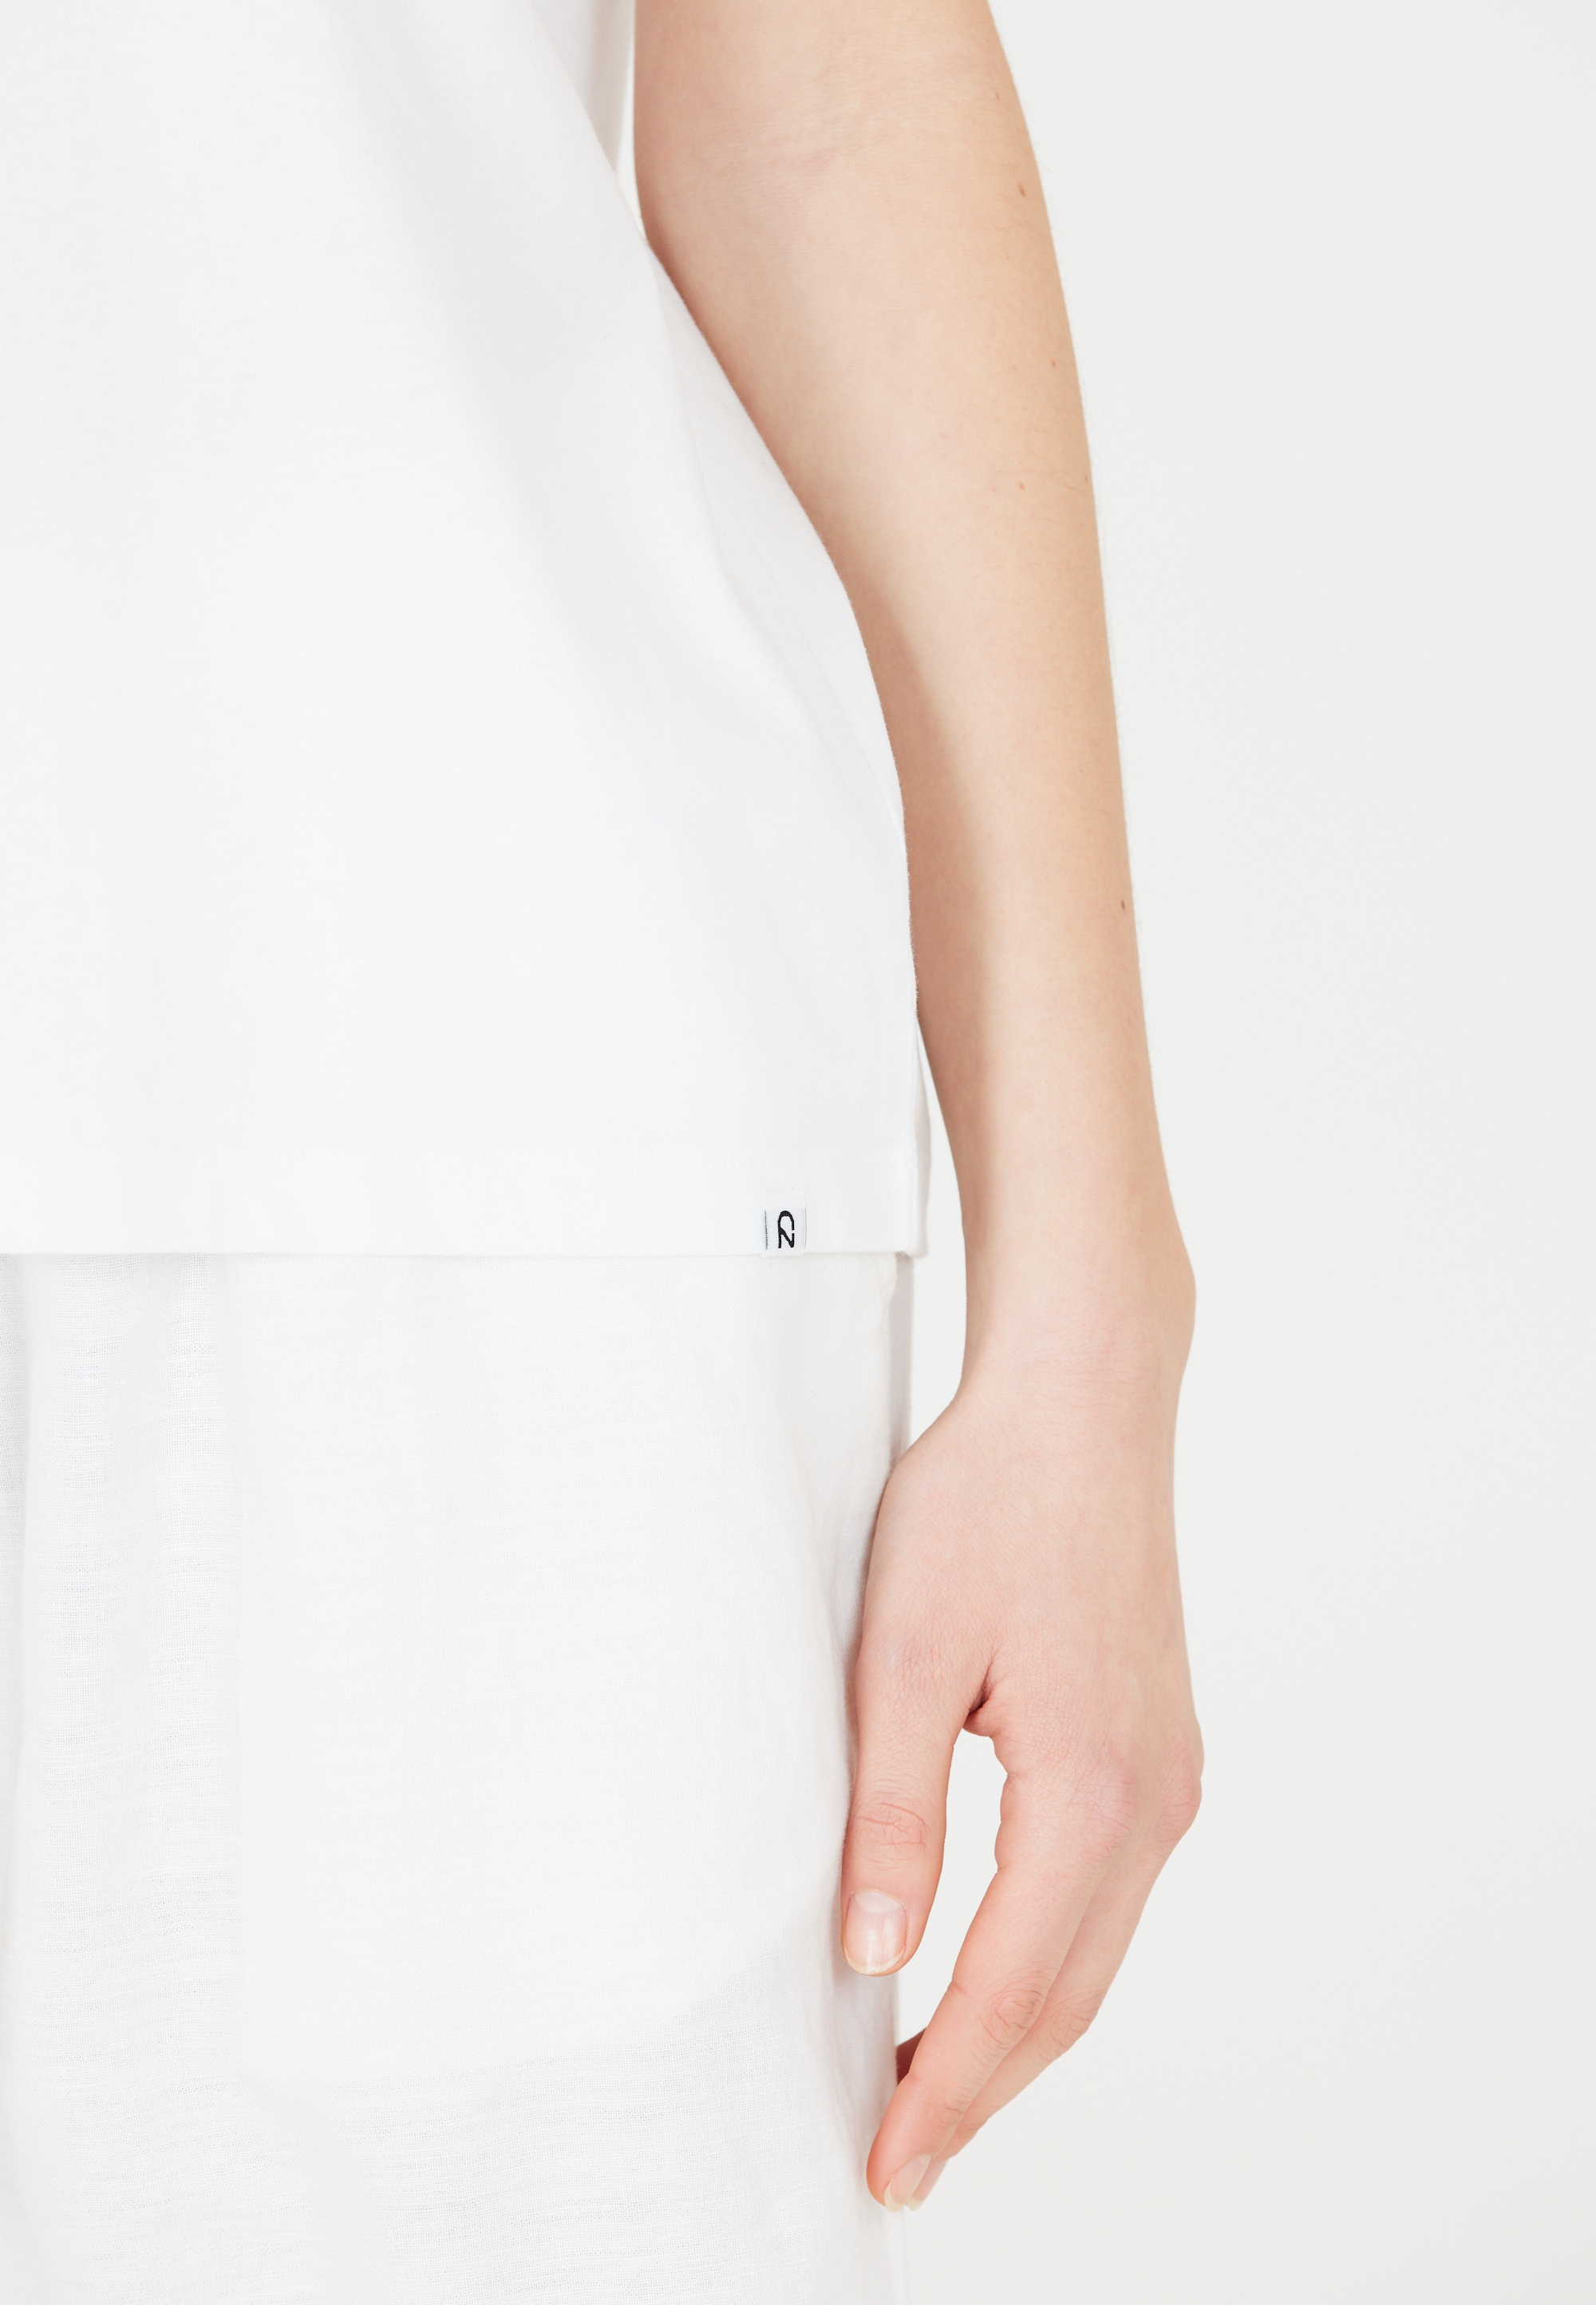 CRUZ Funktionsshirt »Highmore«, im smarten Basic-Look aus reiner Baumwolle